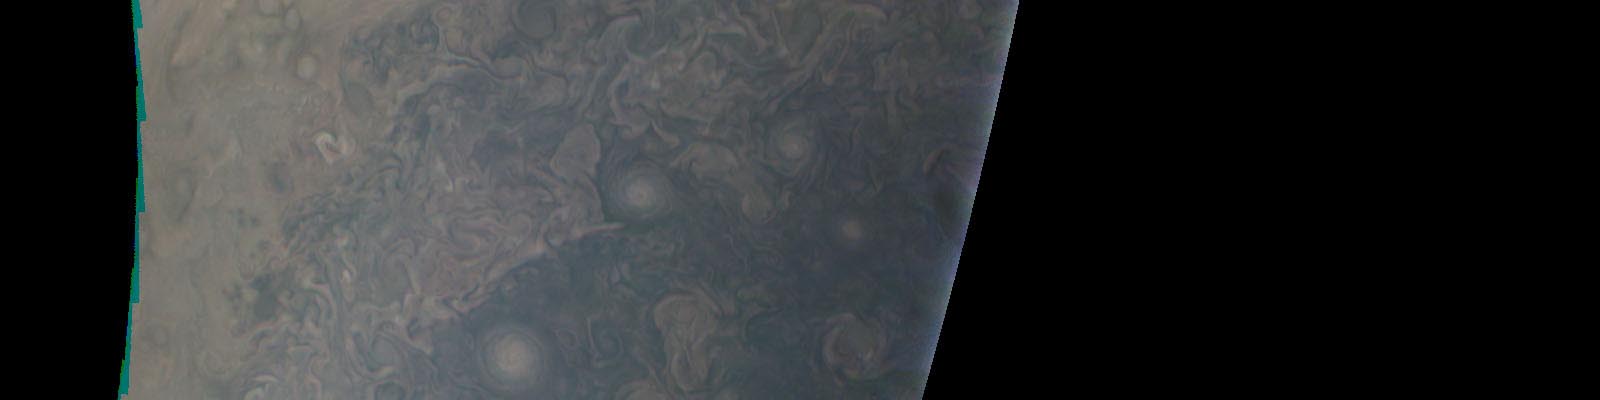 Vue du pôle sud de Jupiter